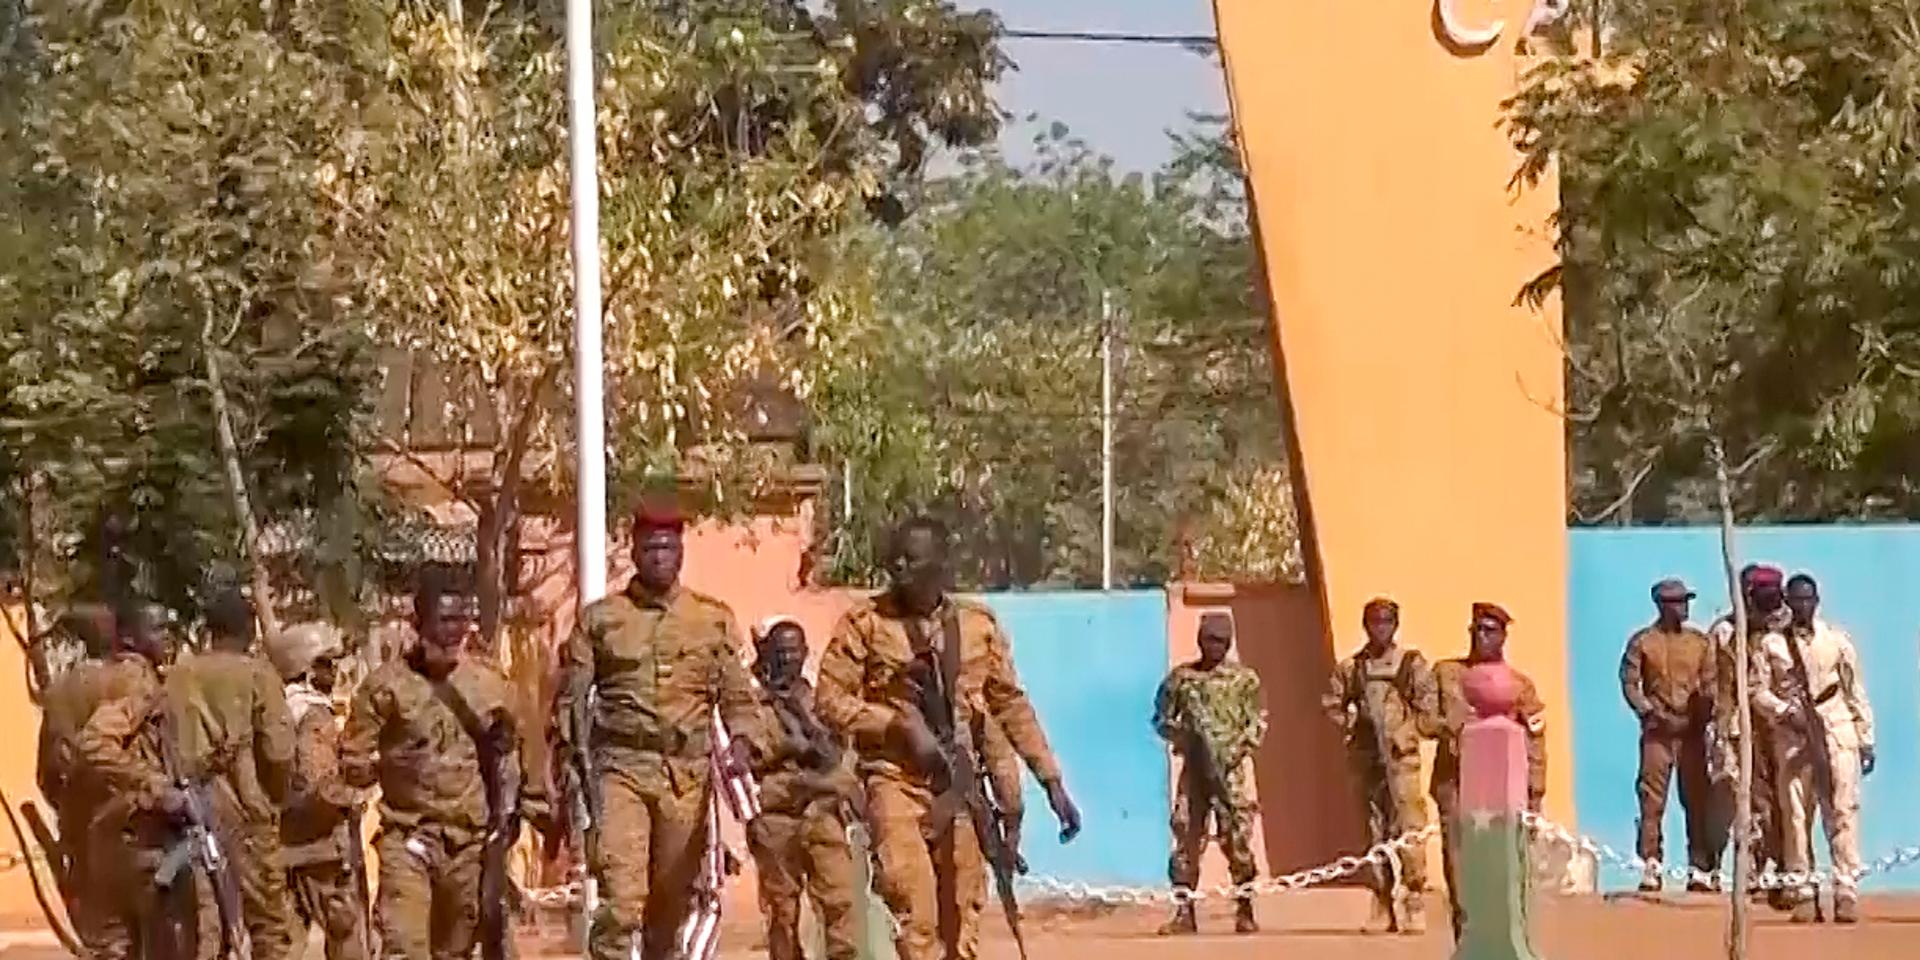 Soldater som deltar i upproret, utanför en militäranläggning i Ouagadougou under måndagen. Bilden är tagen från ett filmklipp. Arkivbild.